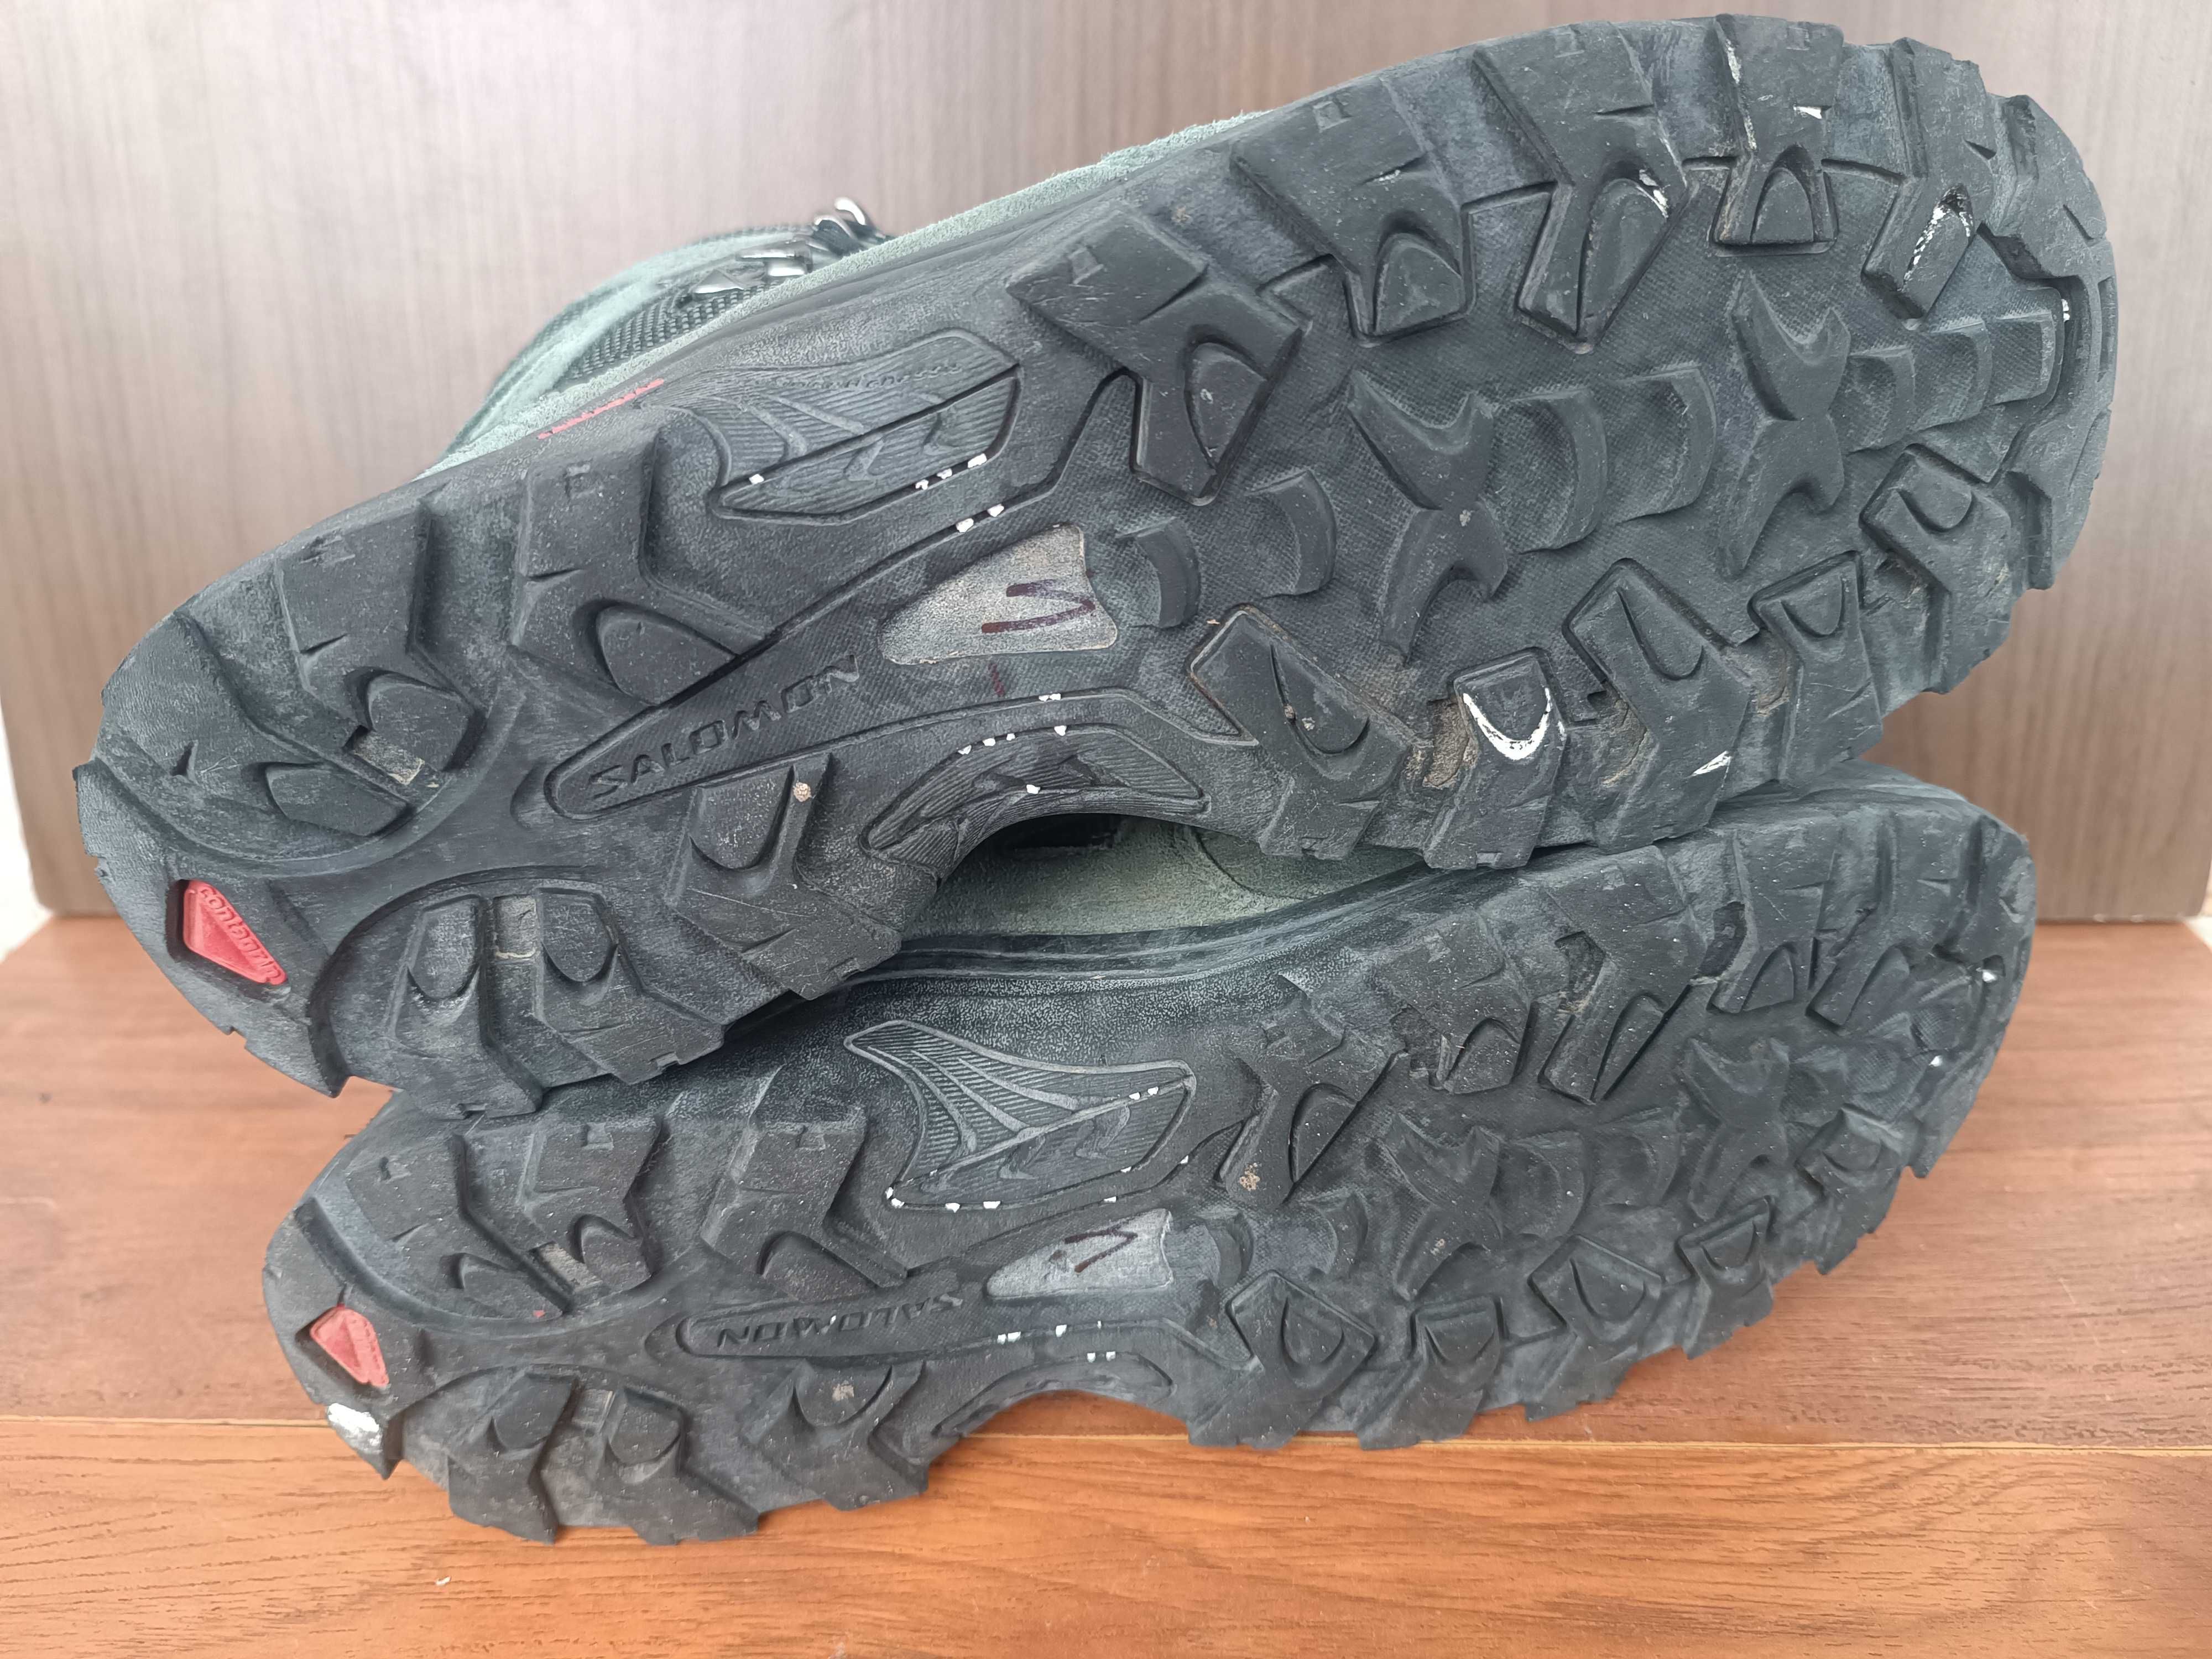 Зимние ботинки берцы Salomon Quest 4 D GoreTex 44.5 28.5 см